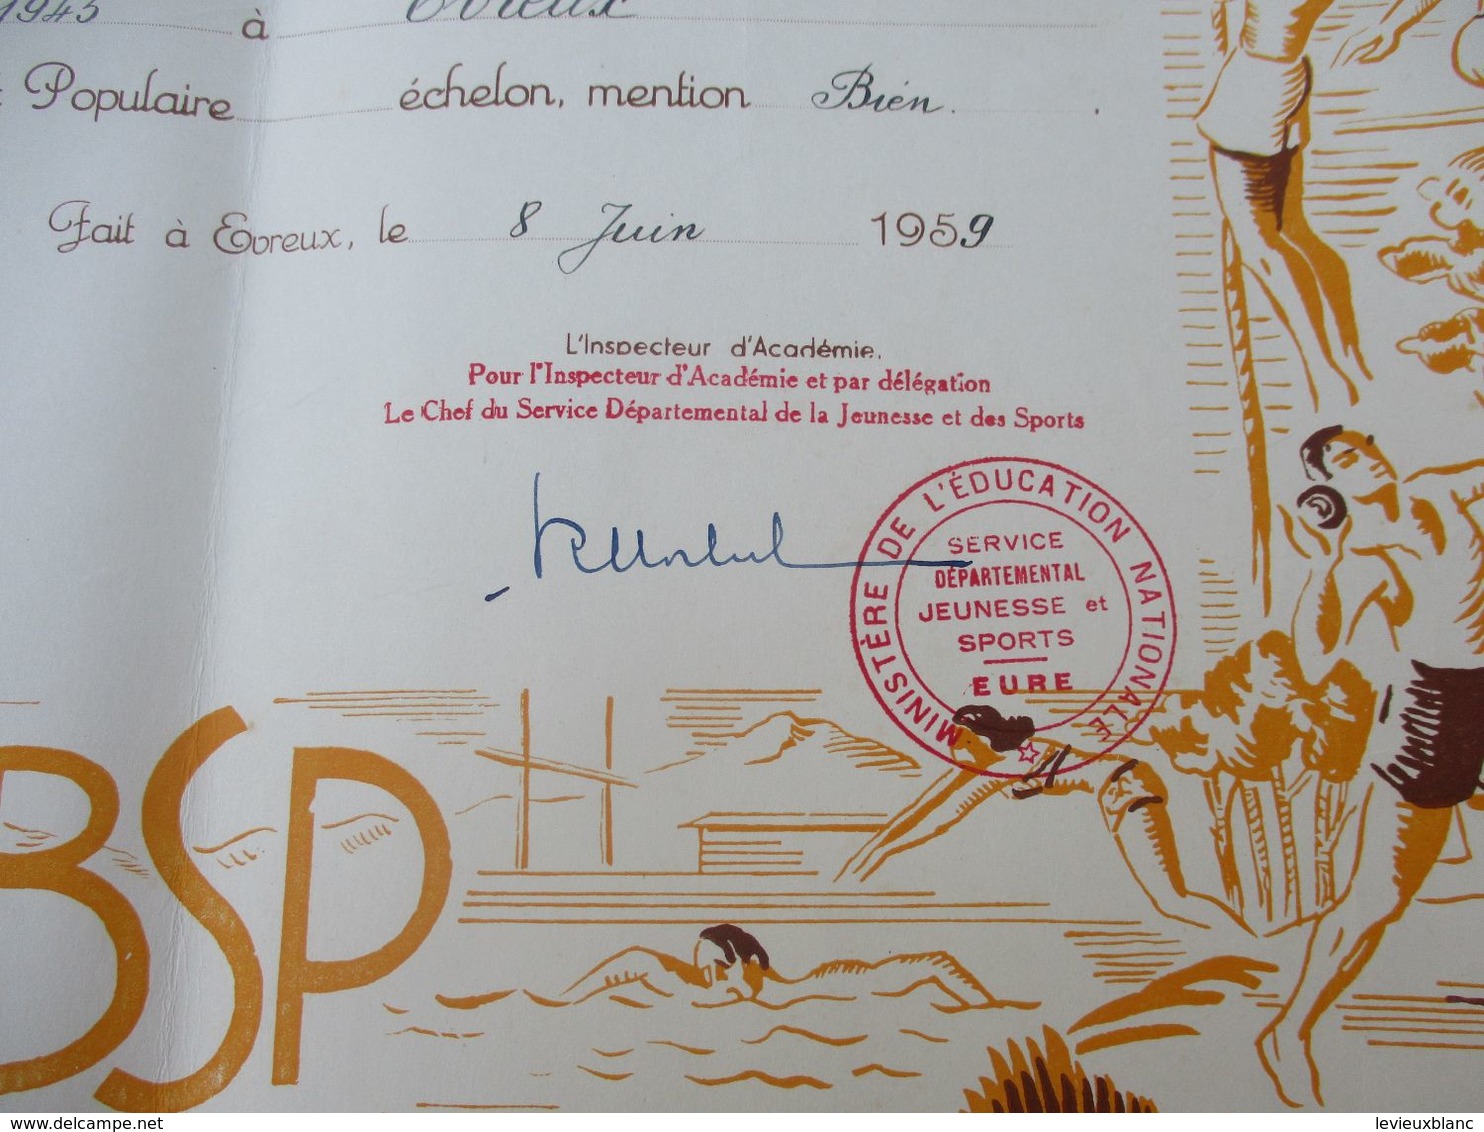 Brevet Sportif  Populaire/Académie De CAEN/ Département De L'Eure//Duval JP/Evreux /1959   DIP231 - Diplomas Y Calificaciones Escolares